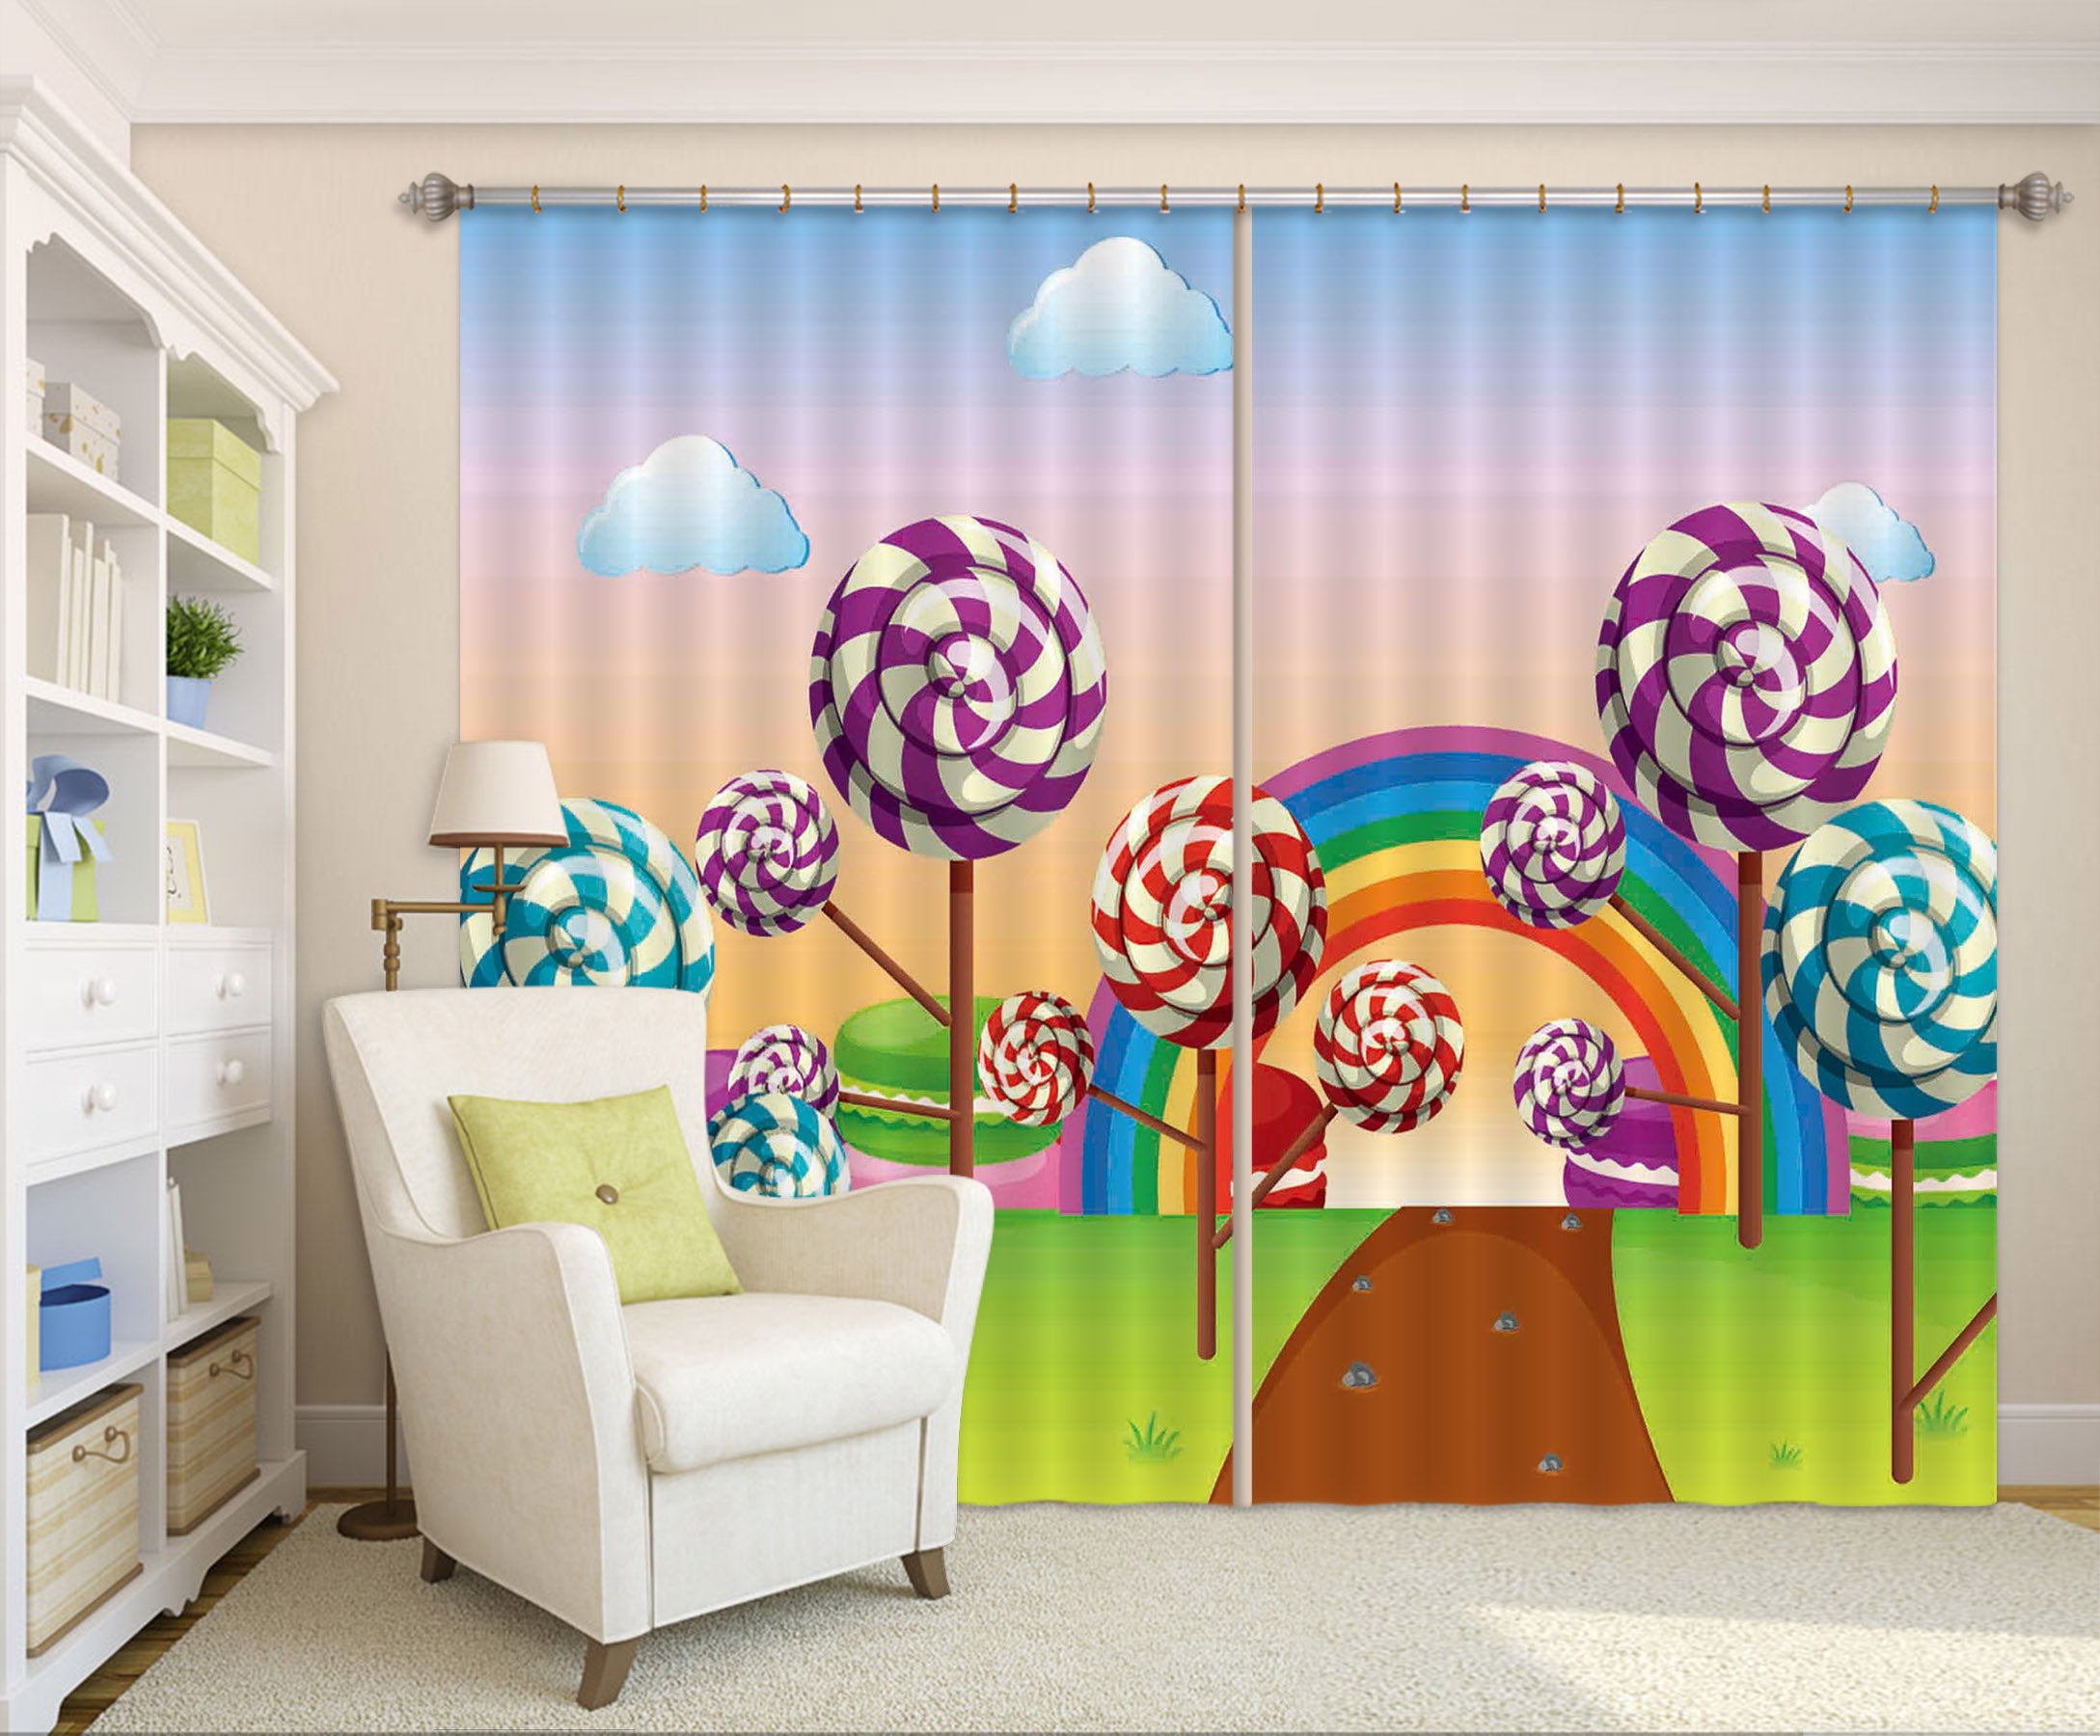 3D Lollipop Kingdom 720 Curtains Drapes